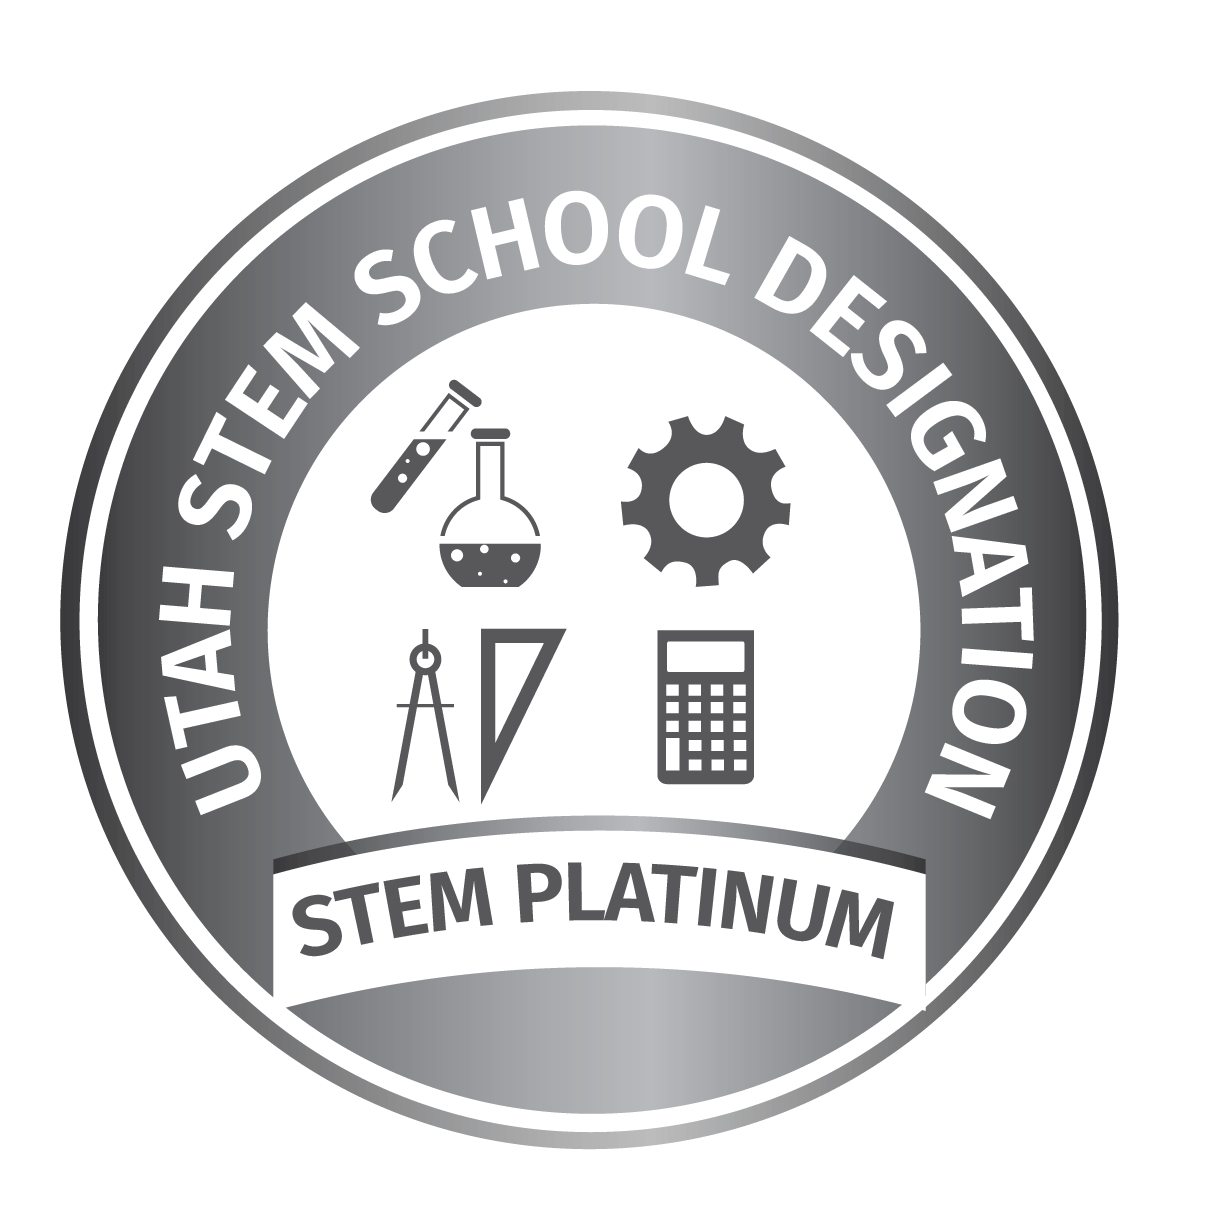 Utah Stem School Platinum logo.